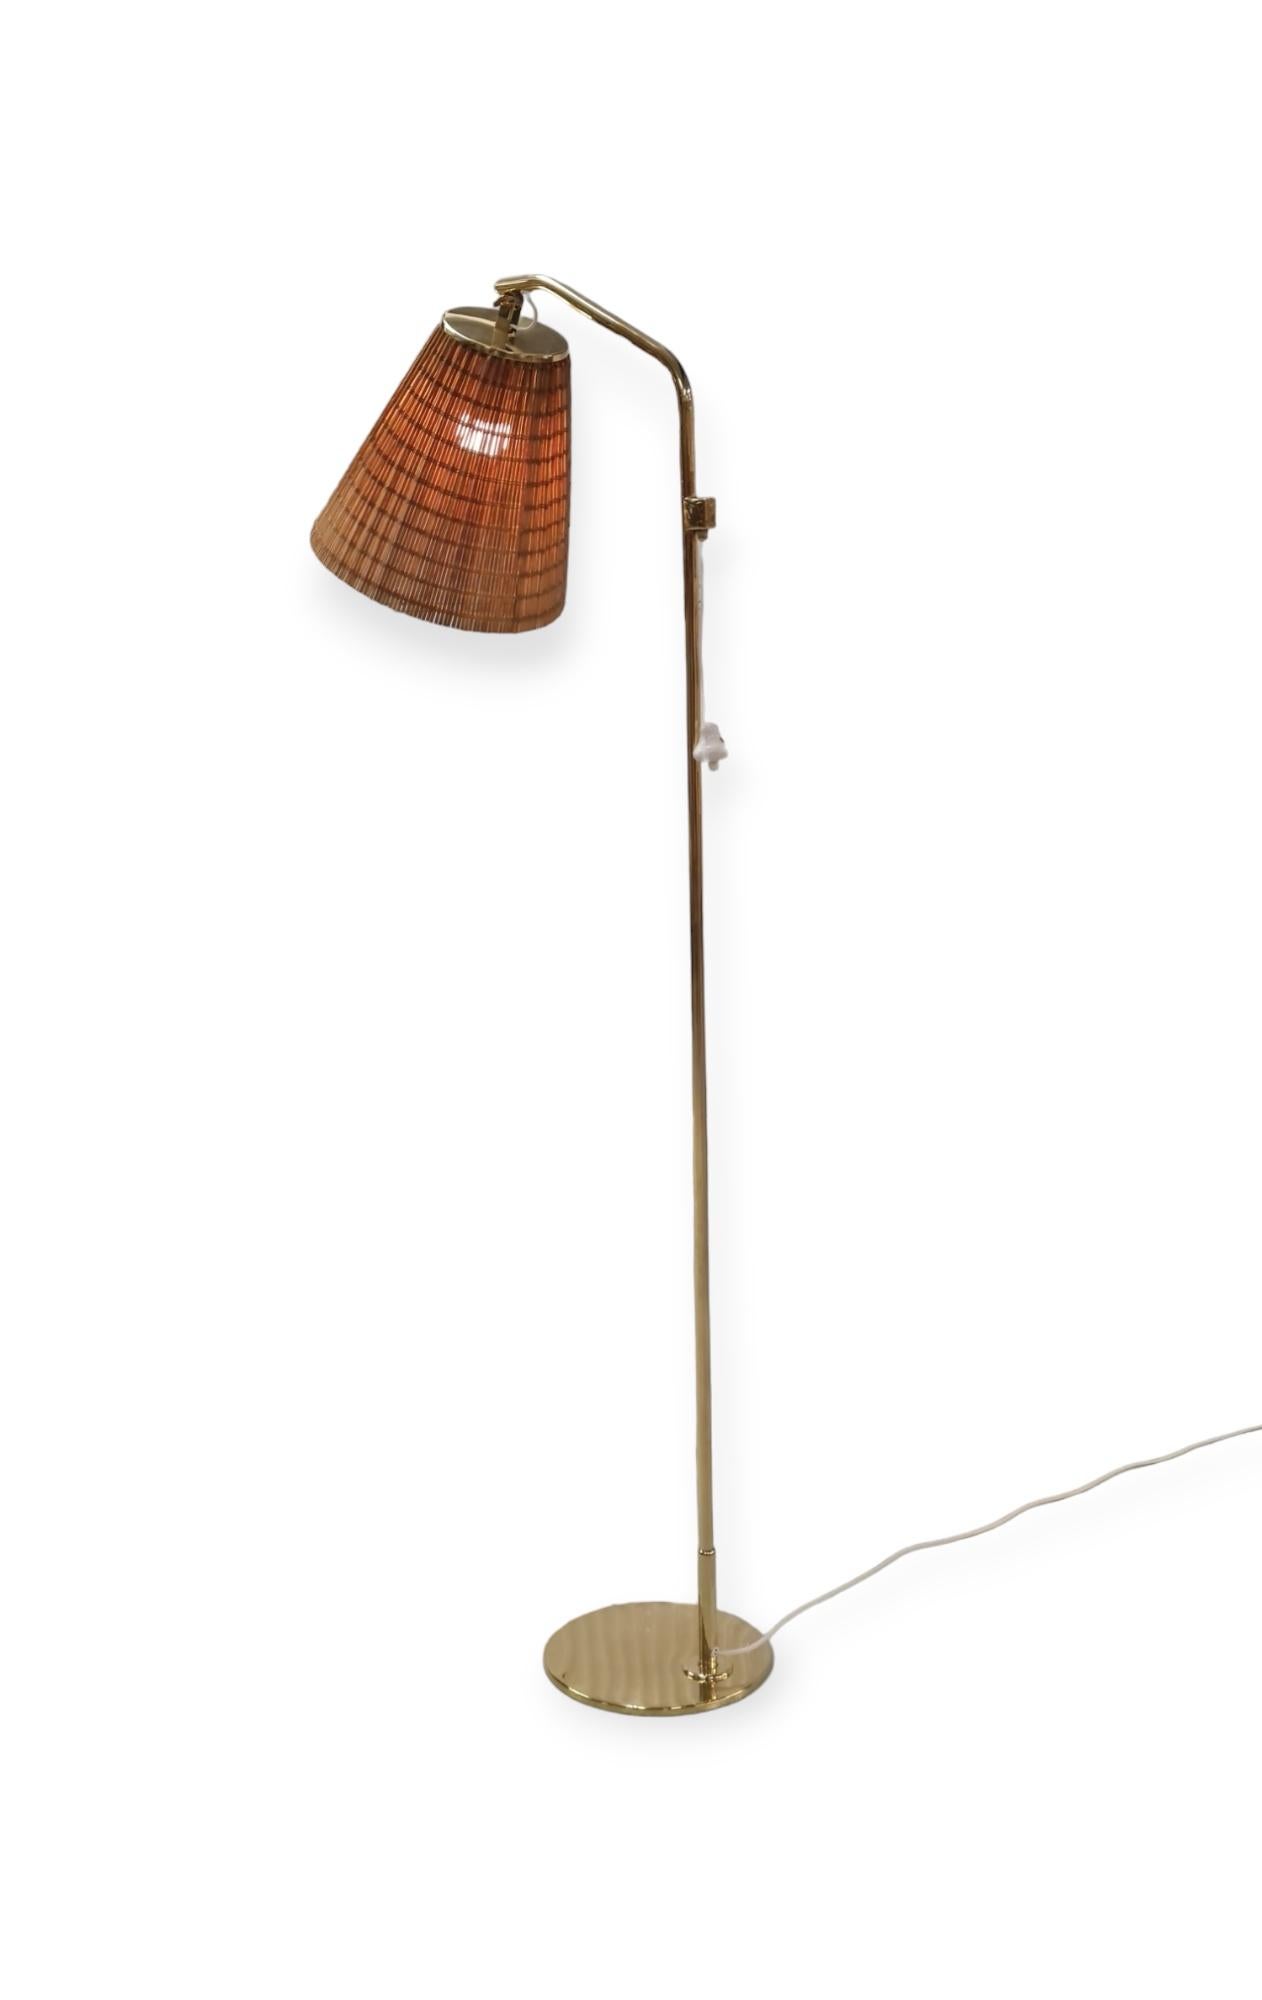 Eine elegante Stehleuchte des Meisterdesigners Paavo Tynell. Diese minimalistische Stehleuchte Modell 9613 besticht durch ihre schlichte Eleganz. Der Schirm ist verstellbar, was diese Lampe perfekt für Lesezimmer, Schlafzimmer oder Wohnzimmerecken